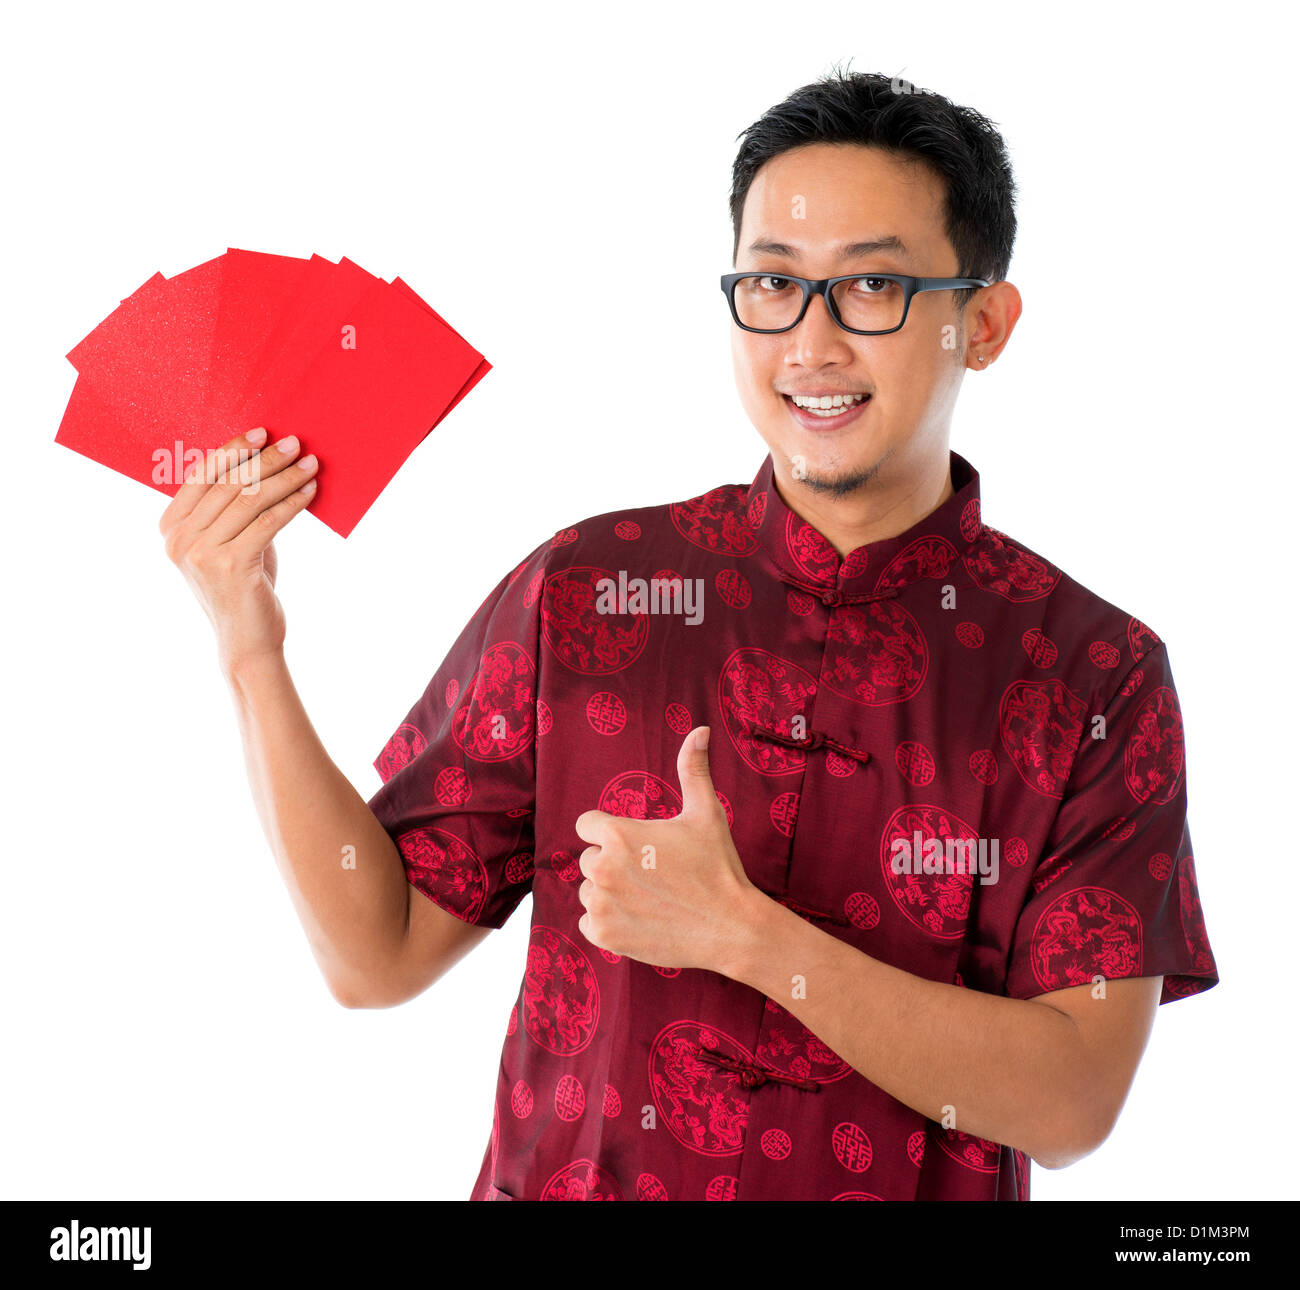 Daumen hoch asiatische chinesische Mann zeigt viele rote Pakete / Ang pow, isoliert auf weißem Hintergrund Stockfoto